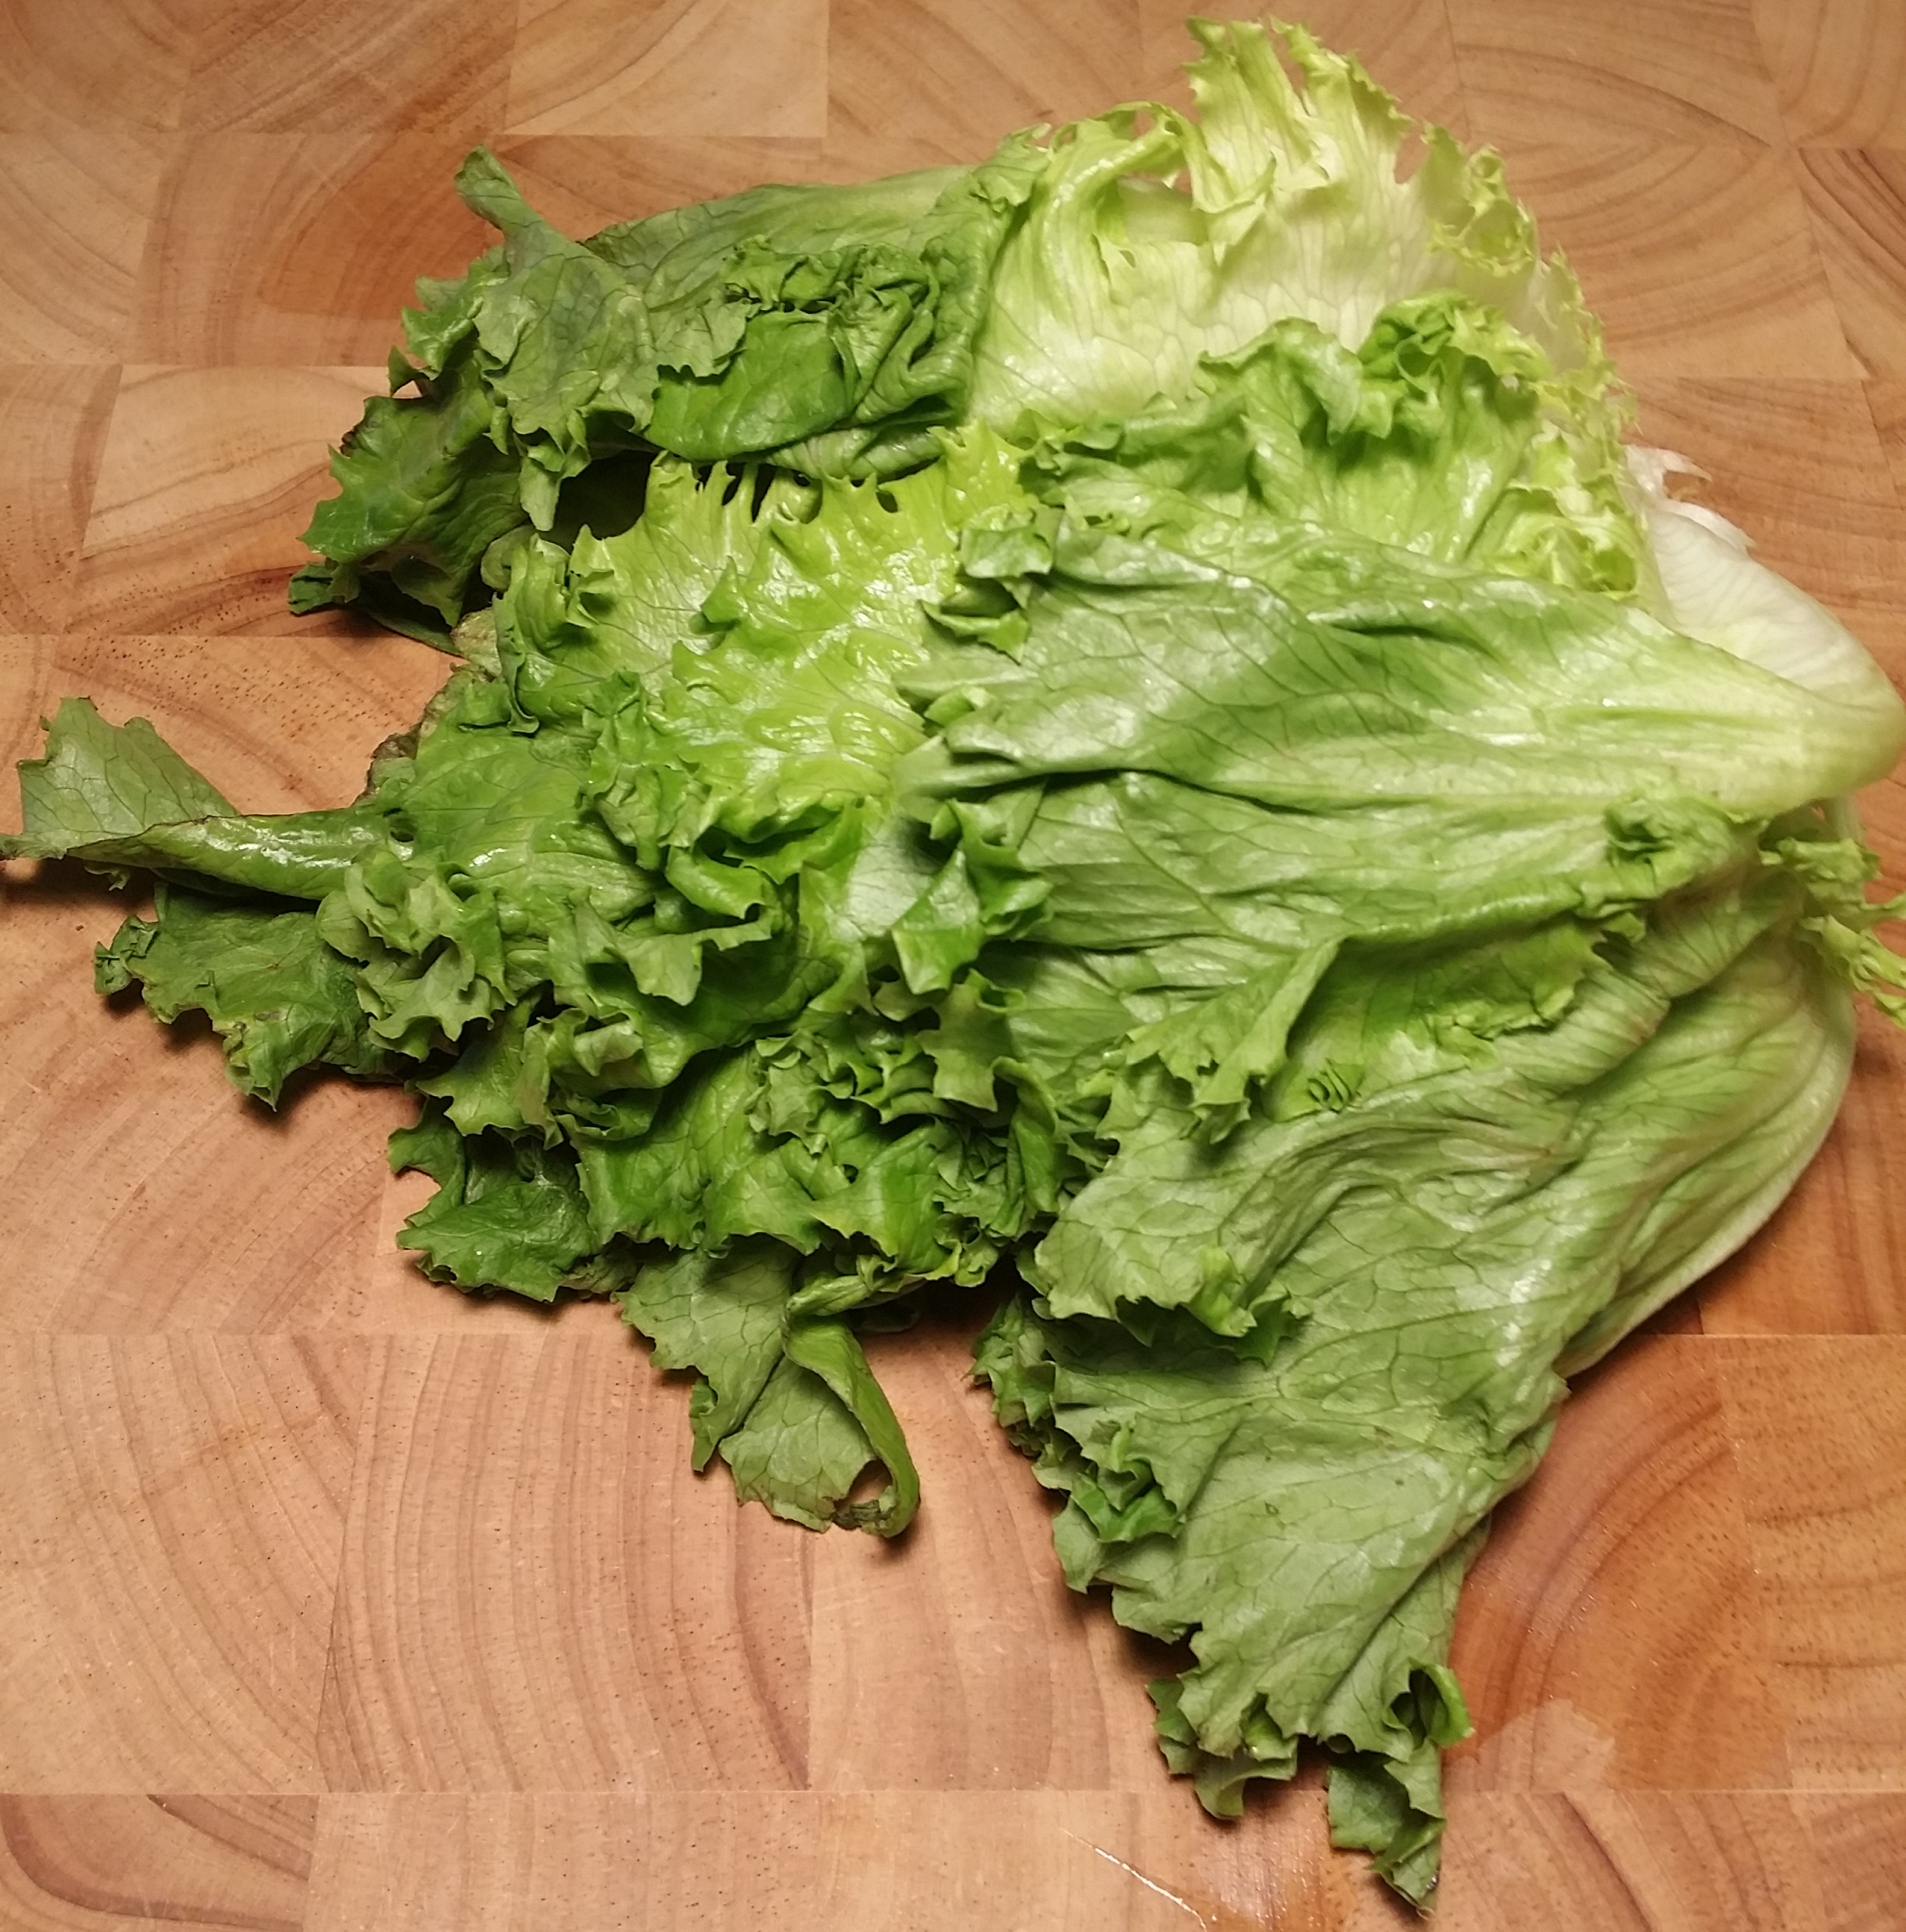 limp lettuce